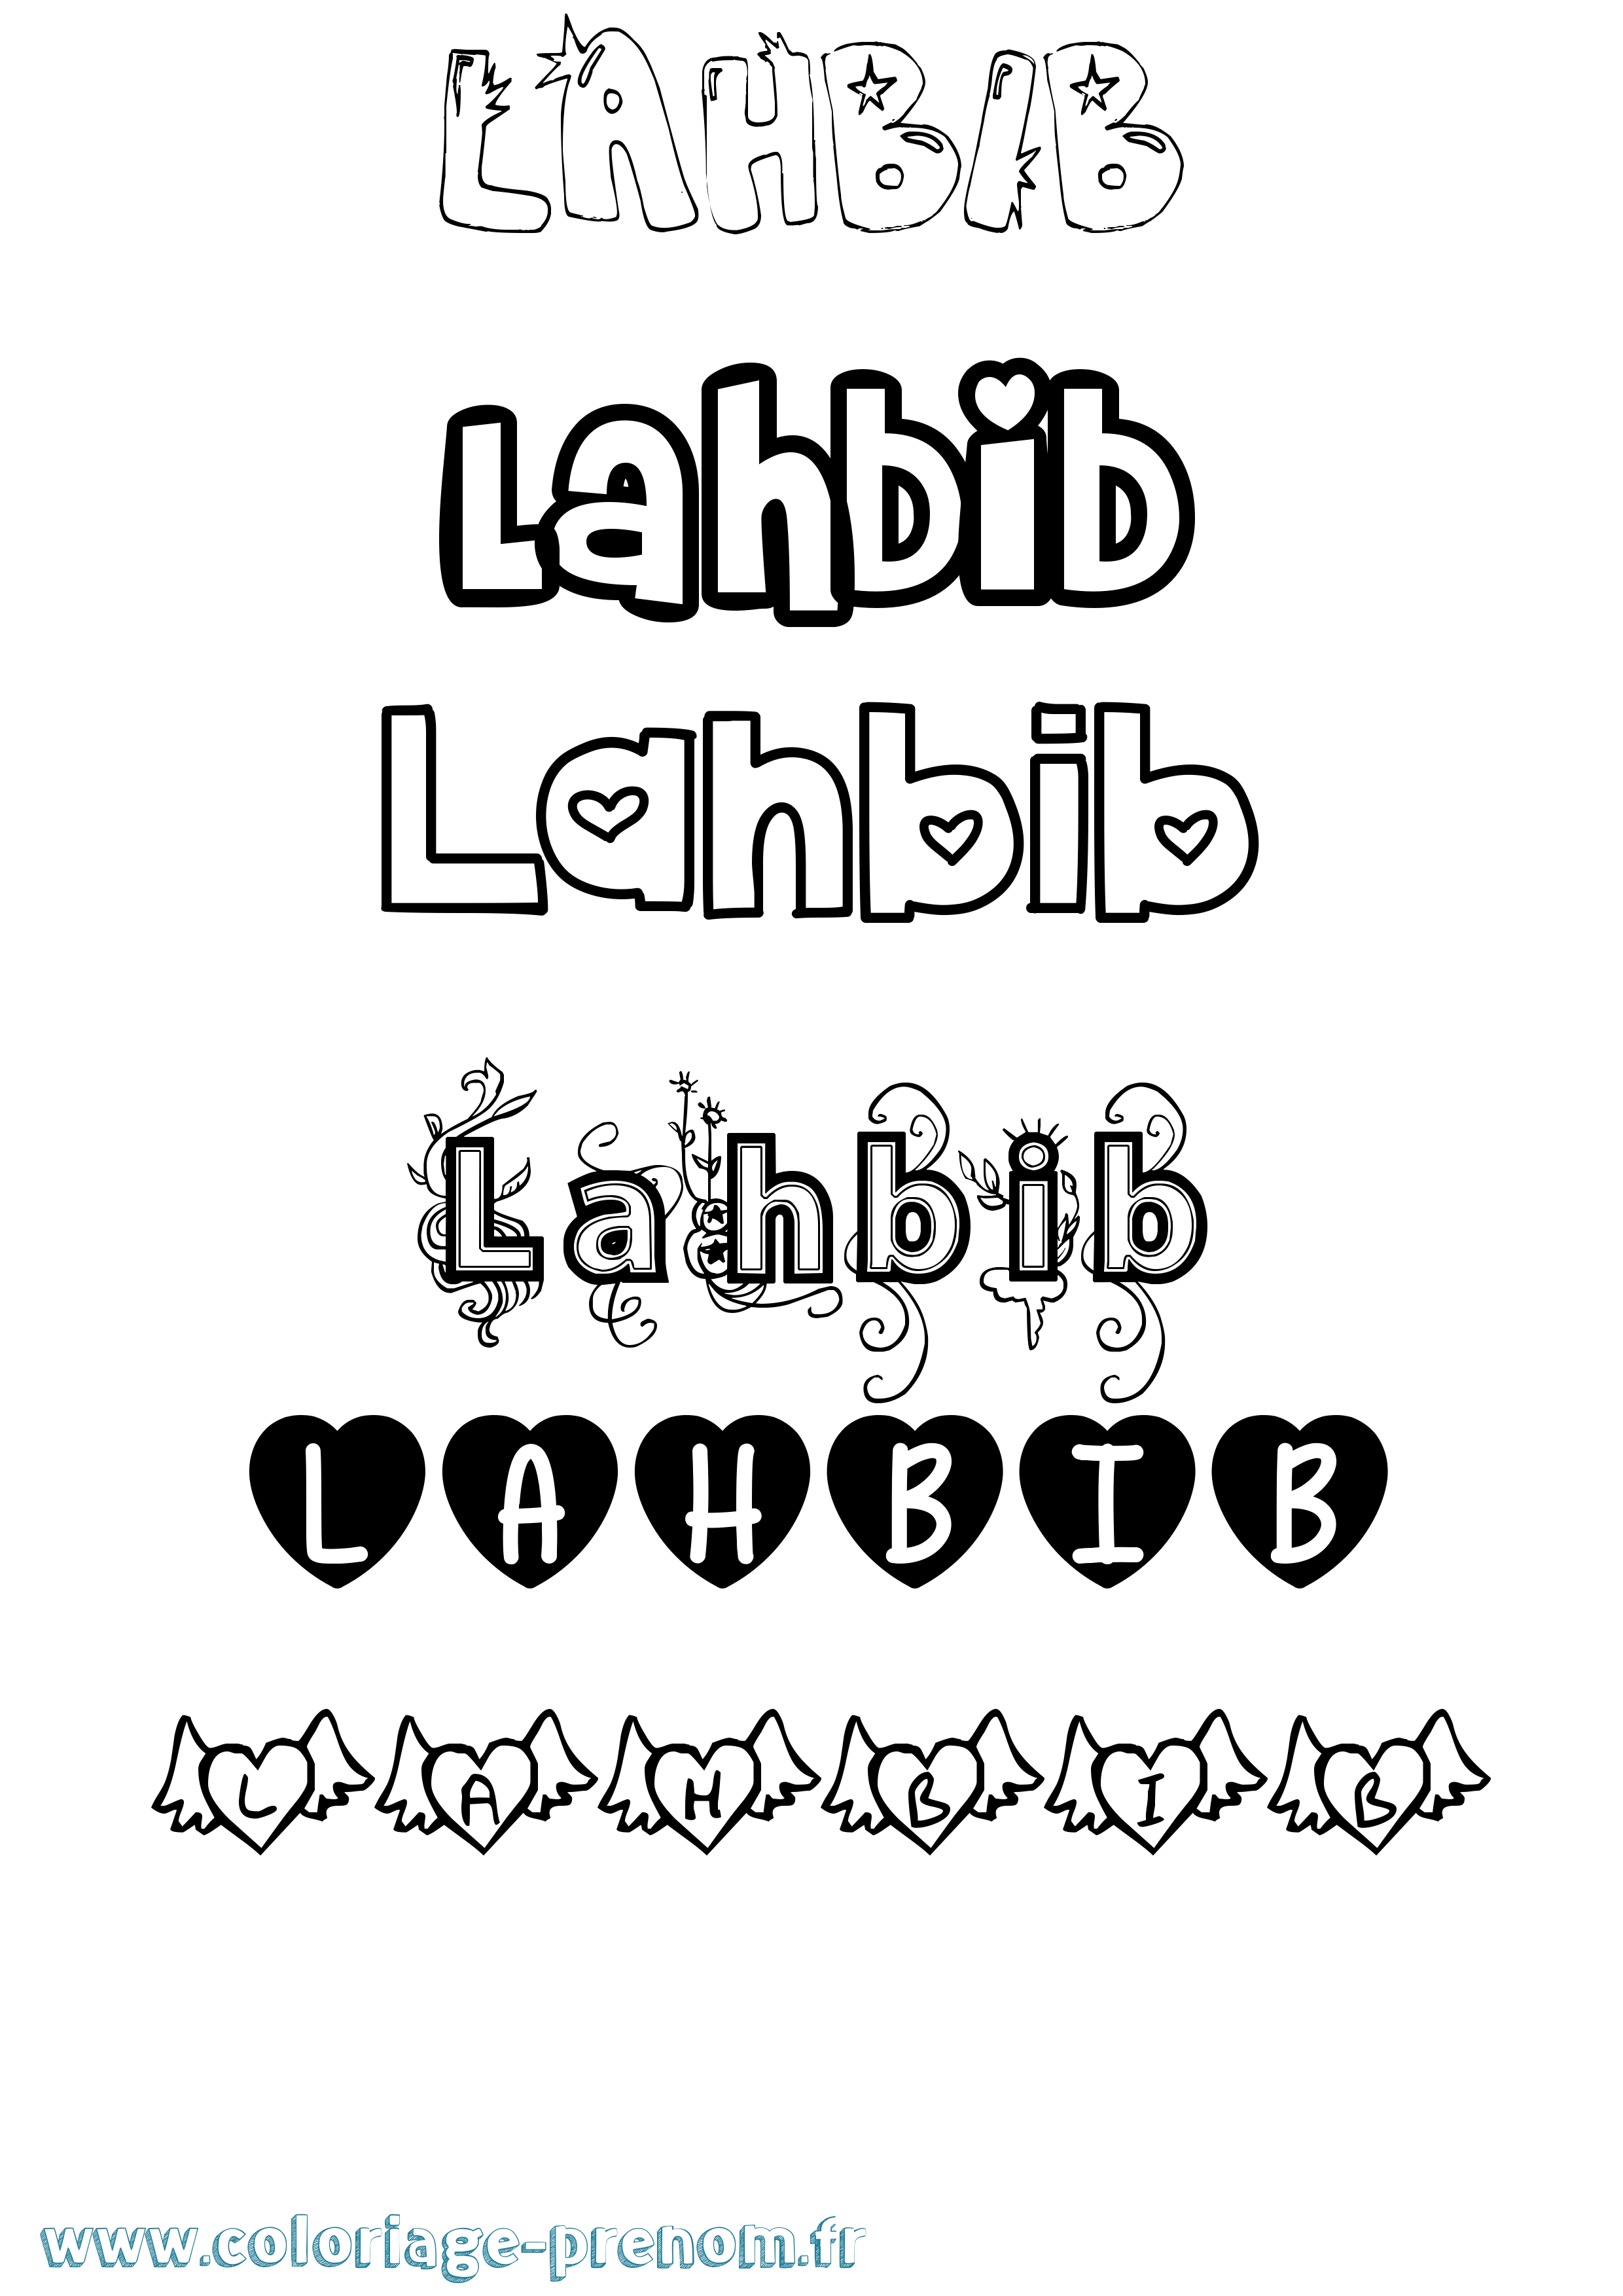 Coloriage prénom Lahbib Girly